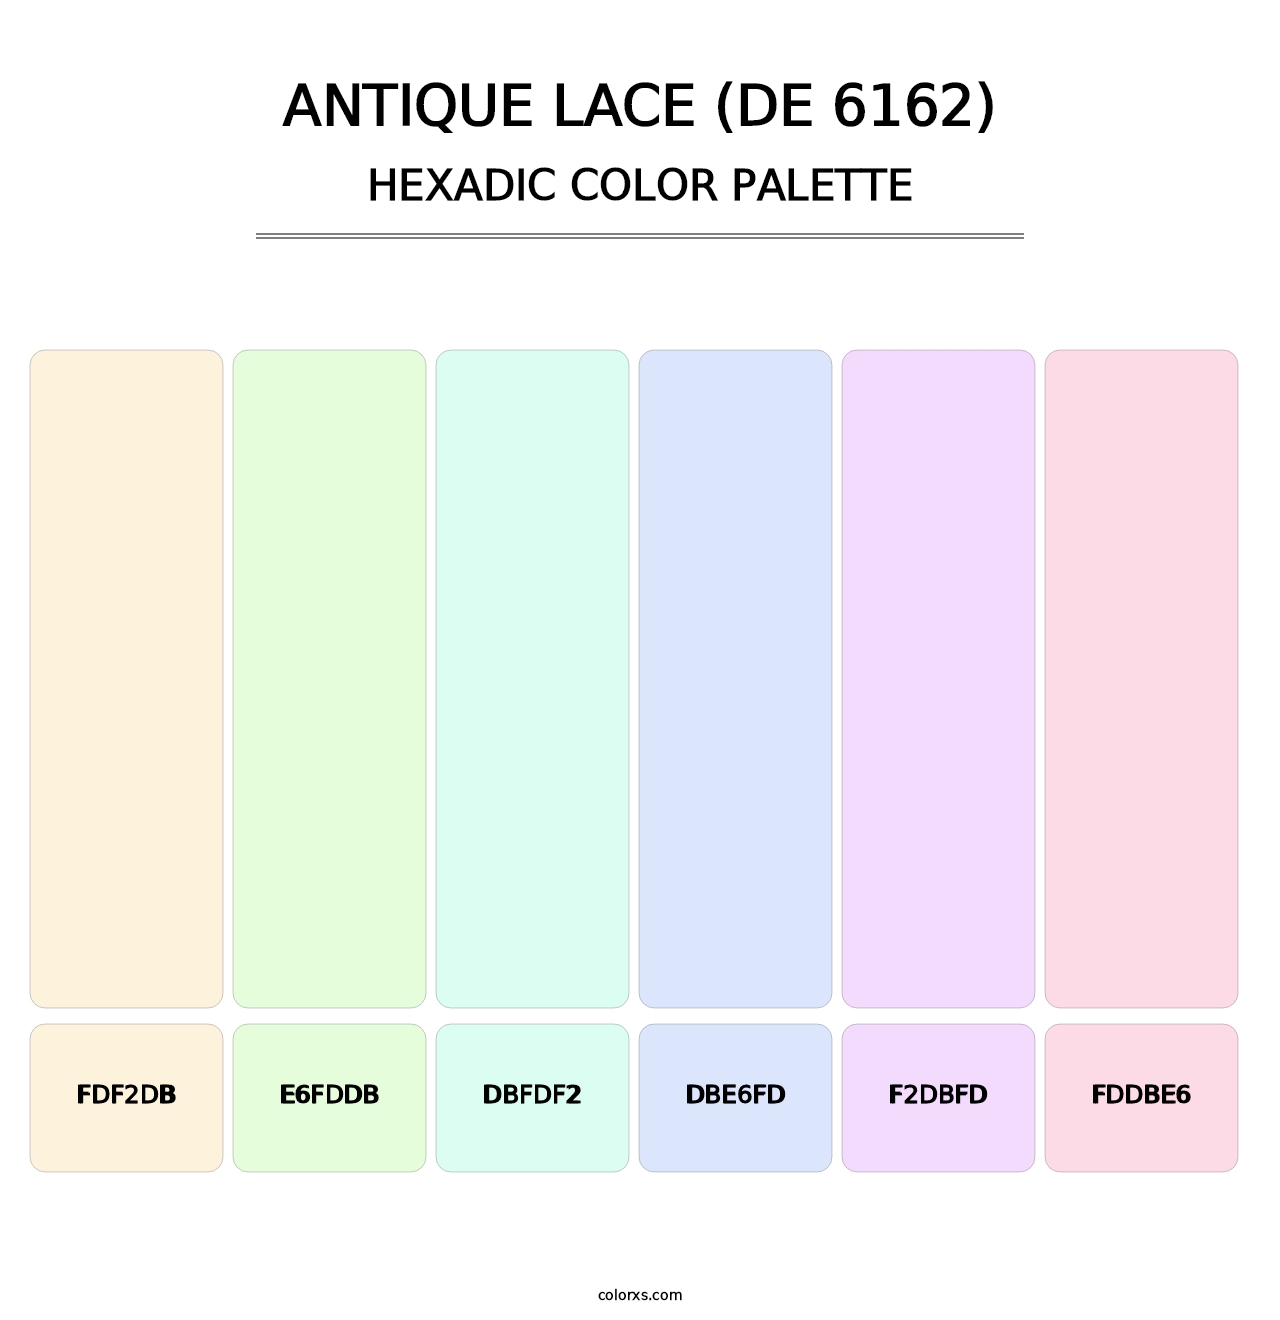 Antique Lace (DE 6162) - Hexadic Color Palette